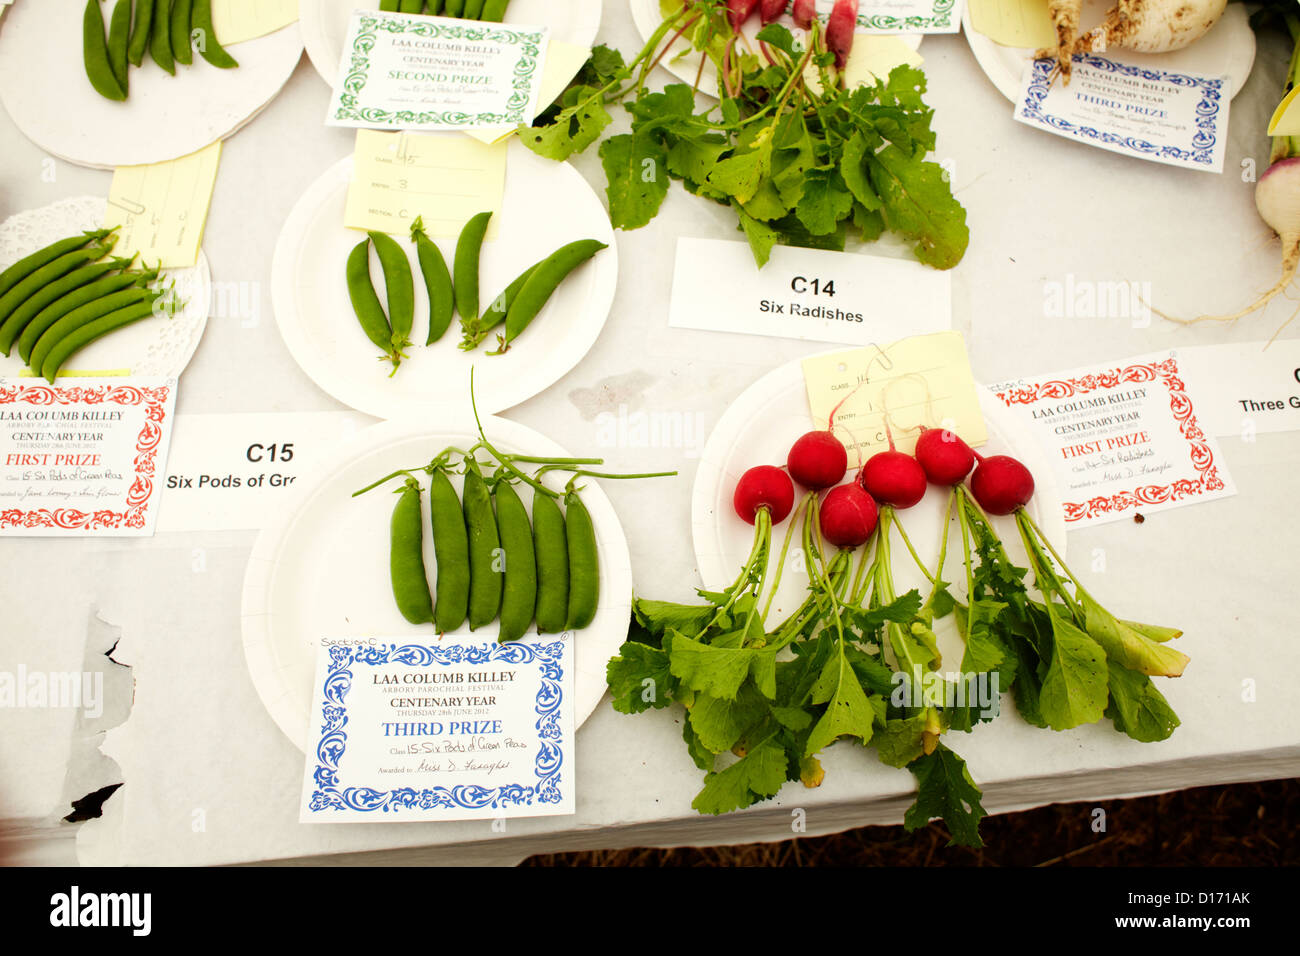 Premio di verdure a Laa Columb Killey show, Isola di Man Foto Stock